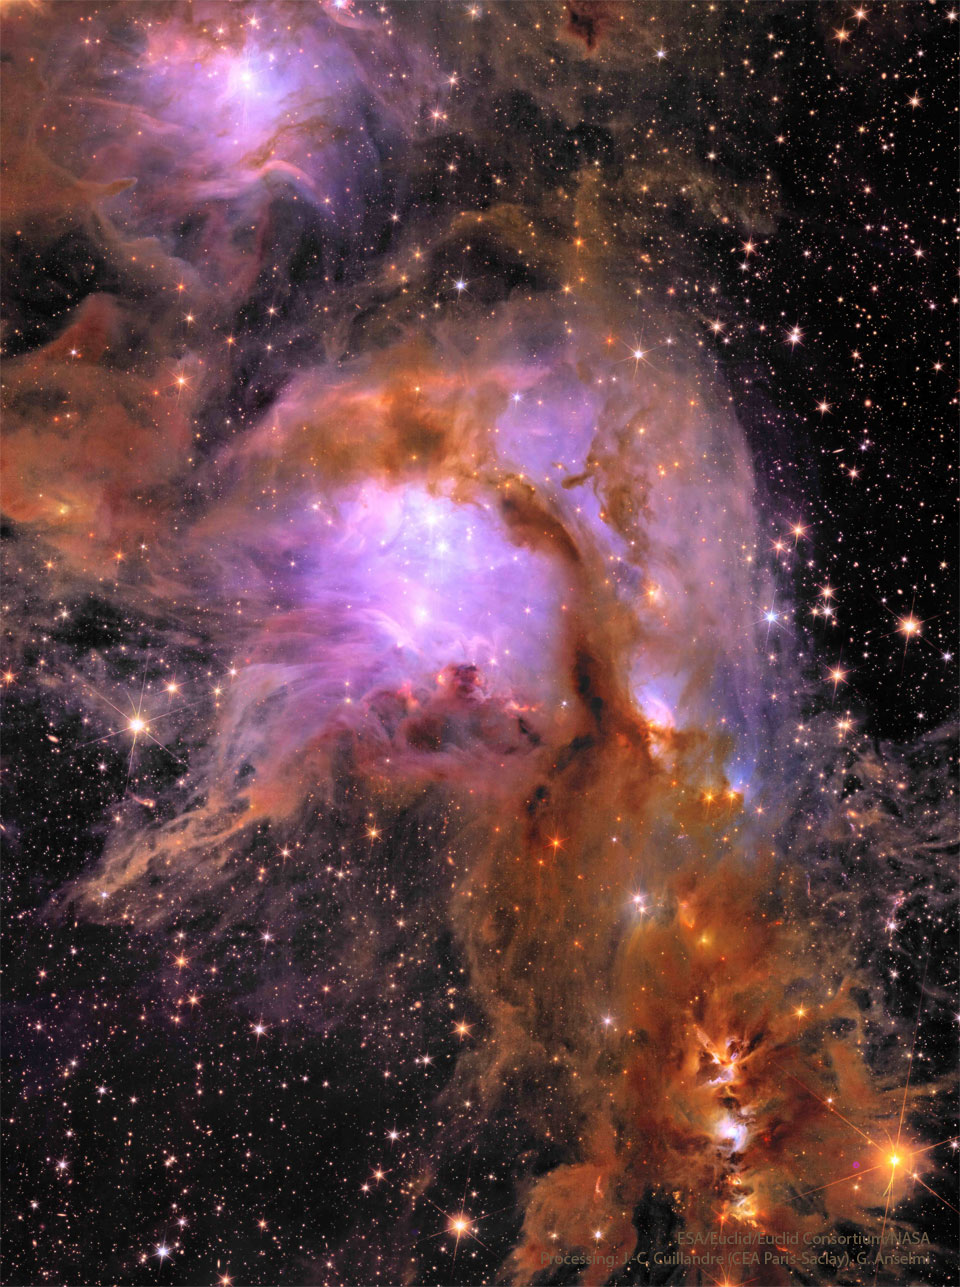 Na zdjęciu widoczne jest pole gwiazd, wypełnione ciemnym pyłem oraz jasnymi, purpurowymi mgławicami. 
Więcej szczegółowych informacji w opisie poniżej.